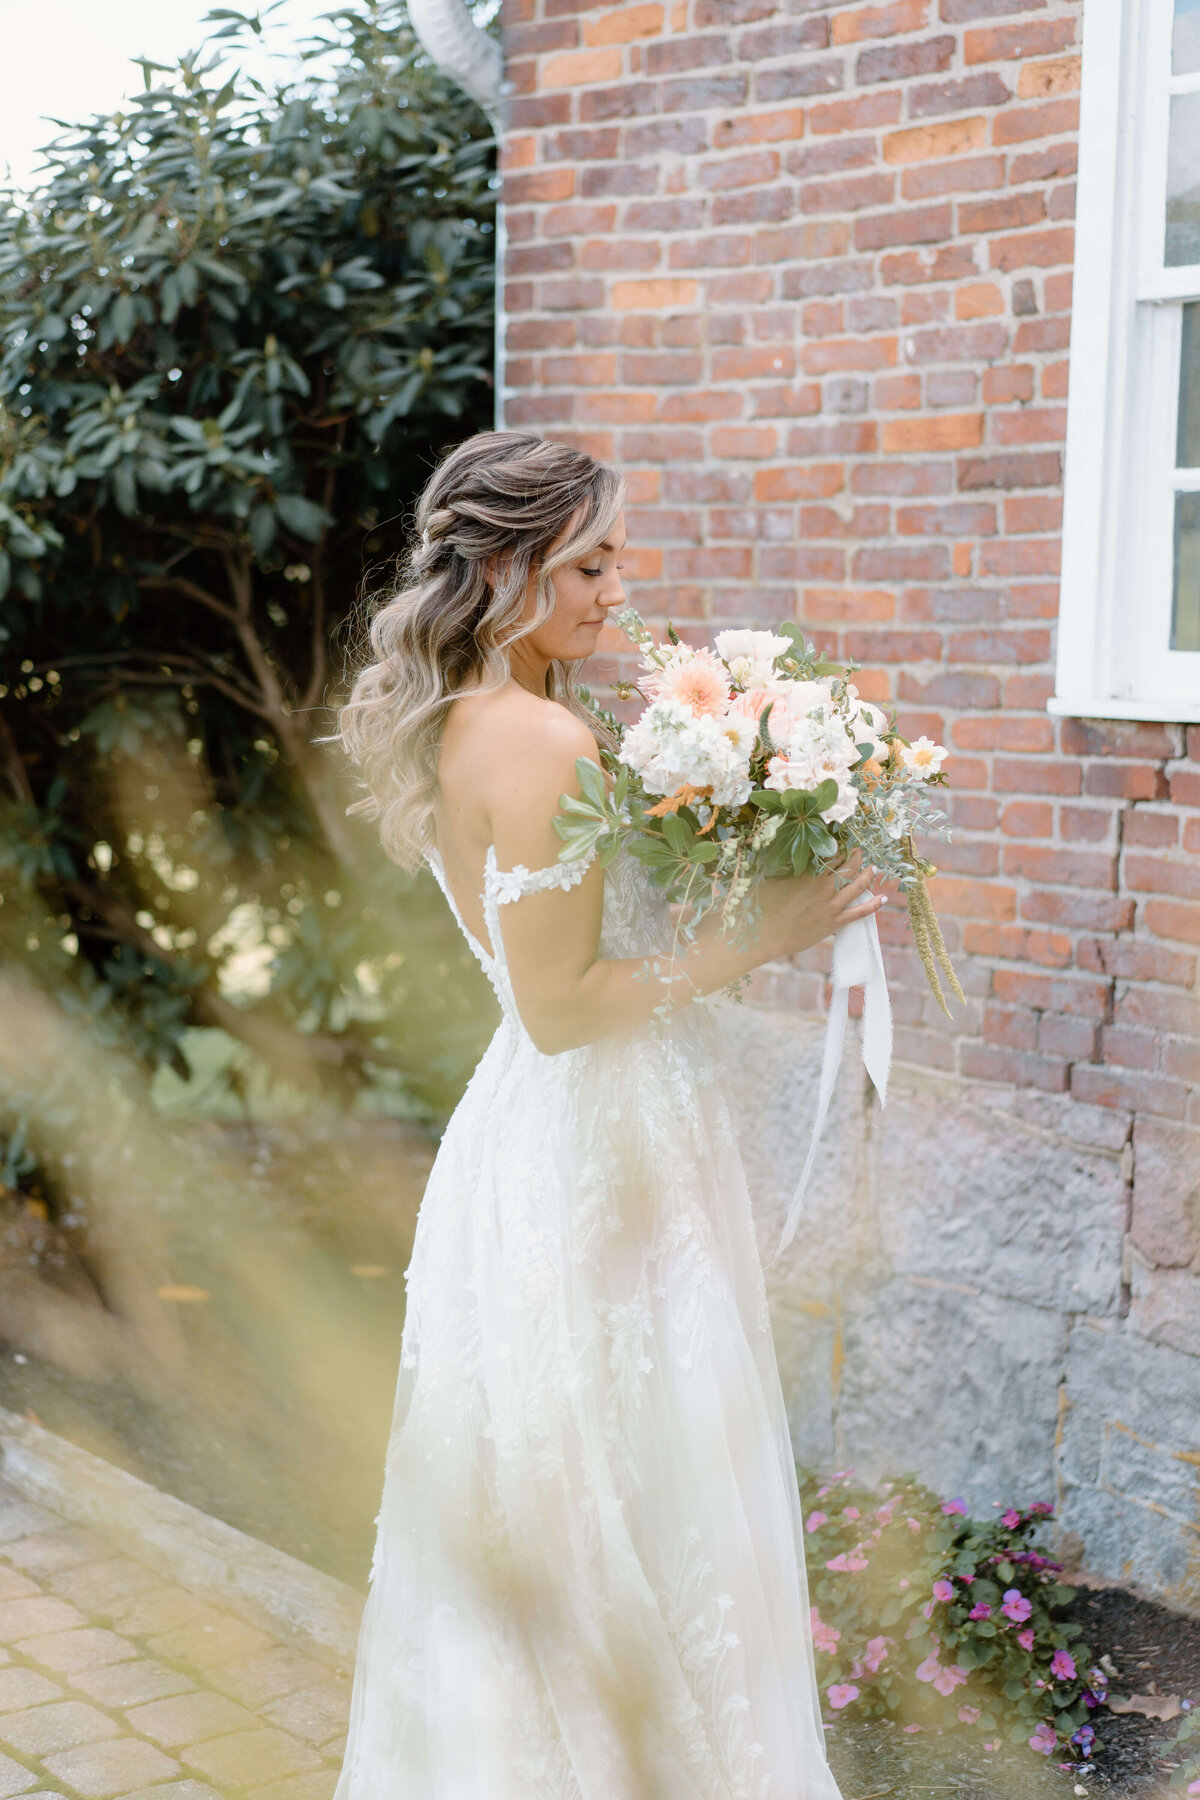 Bride holding bouquet of pale florals